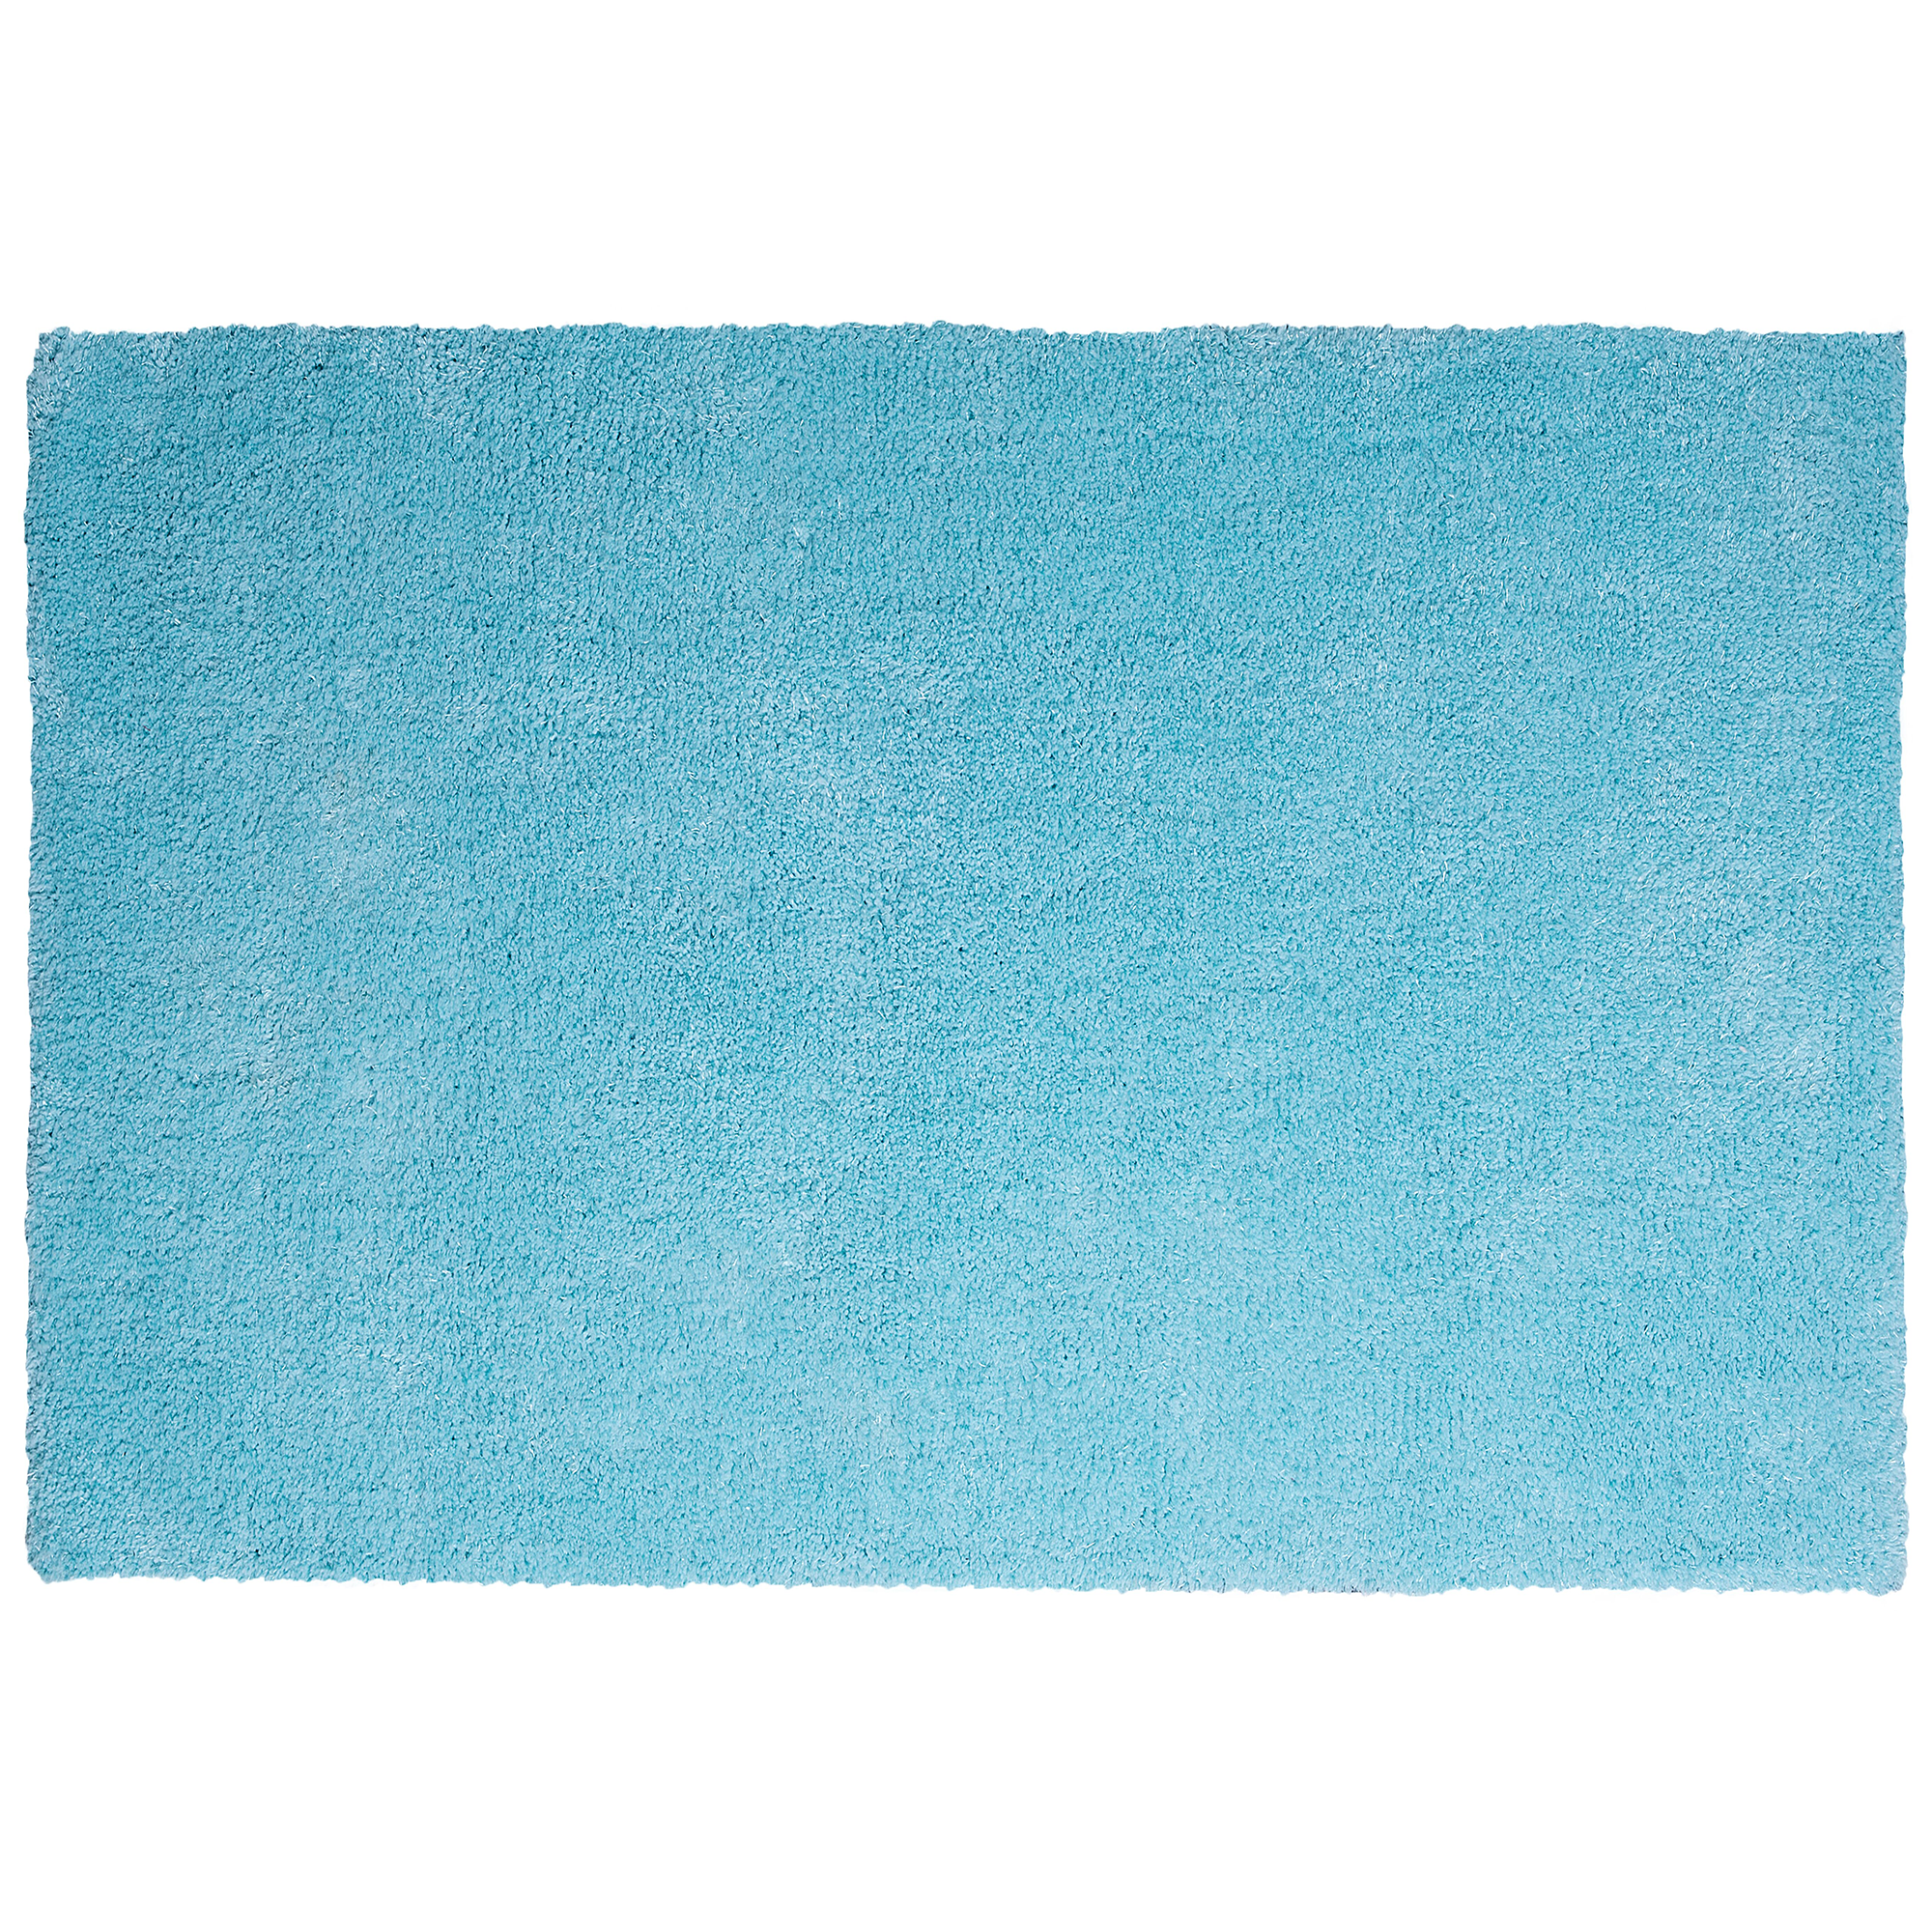 Alfombra de pelo largo azul claro 140 x 200 cm moderna Demre